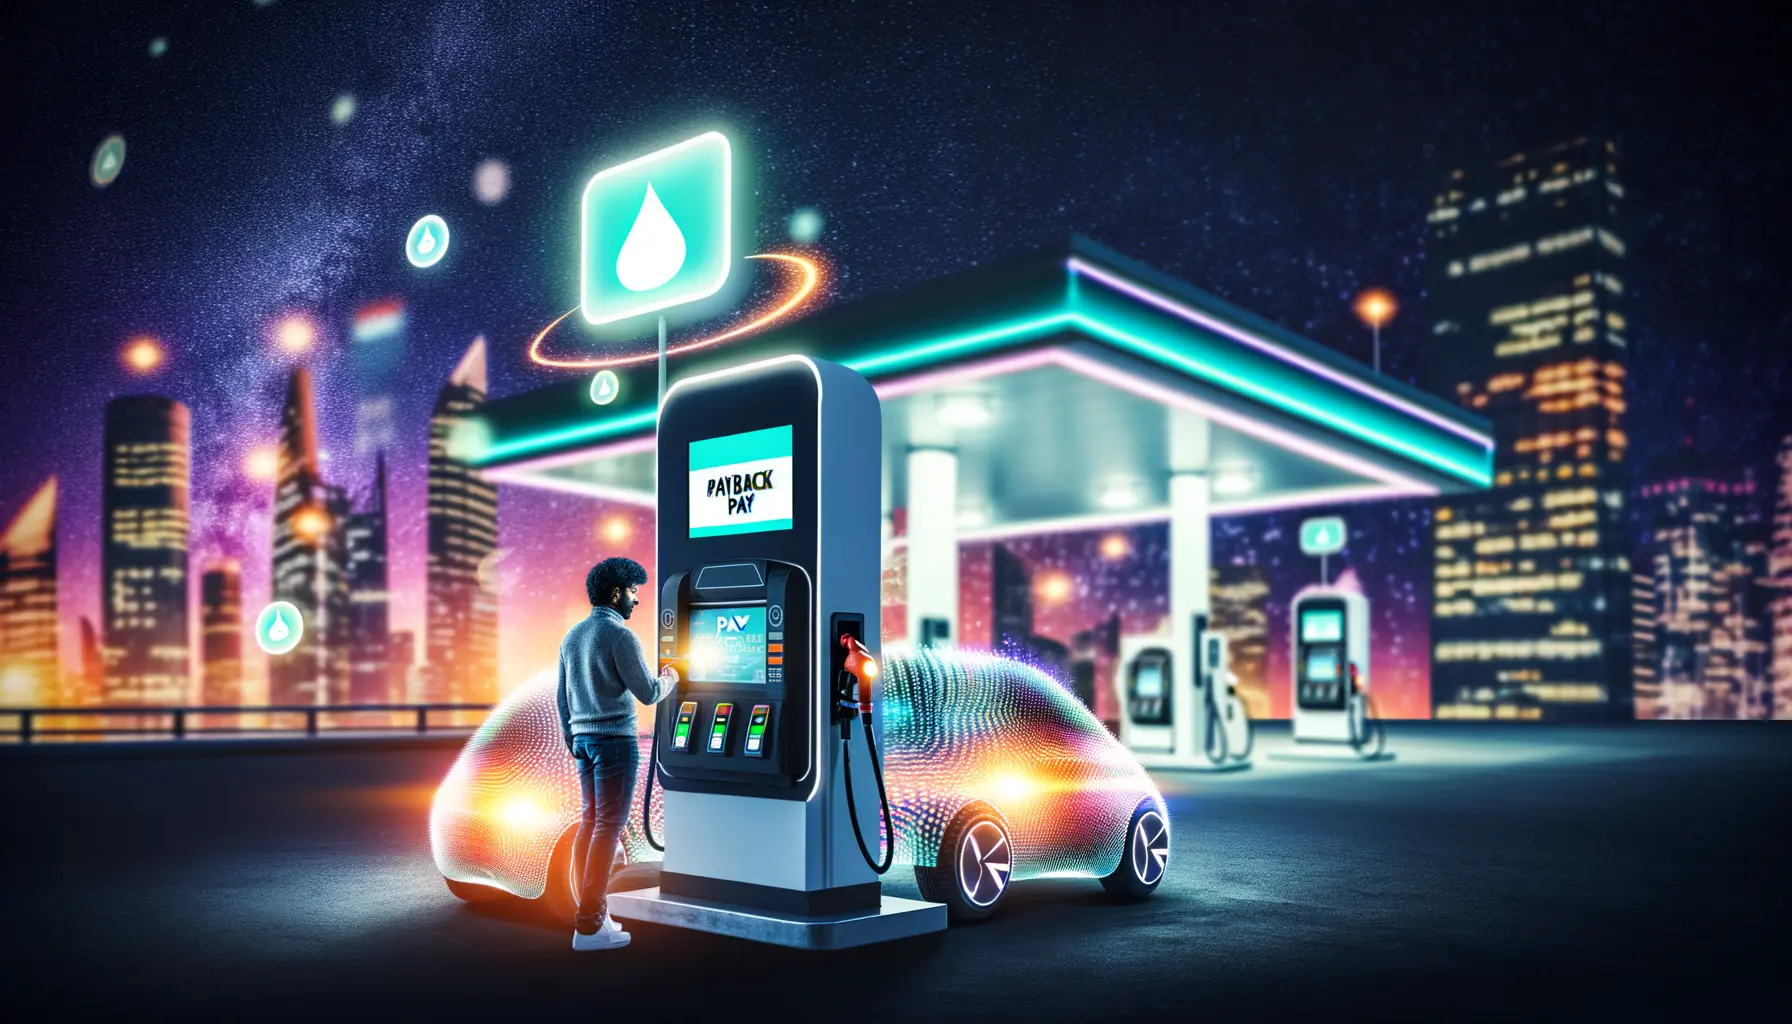 Künstlerische Darstellung einer Fuel & Go Tankstelle